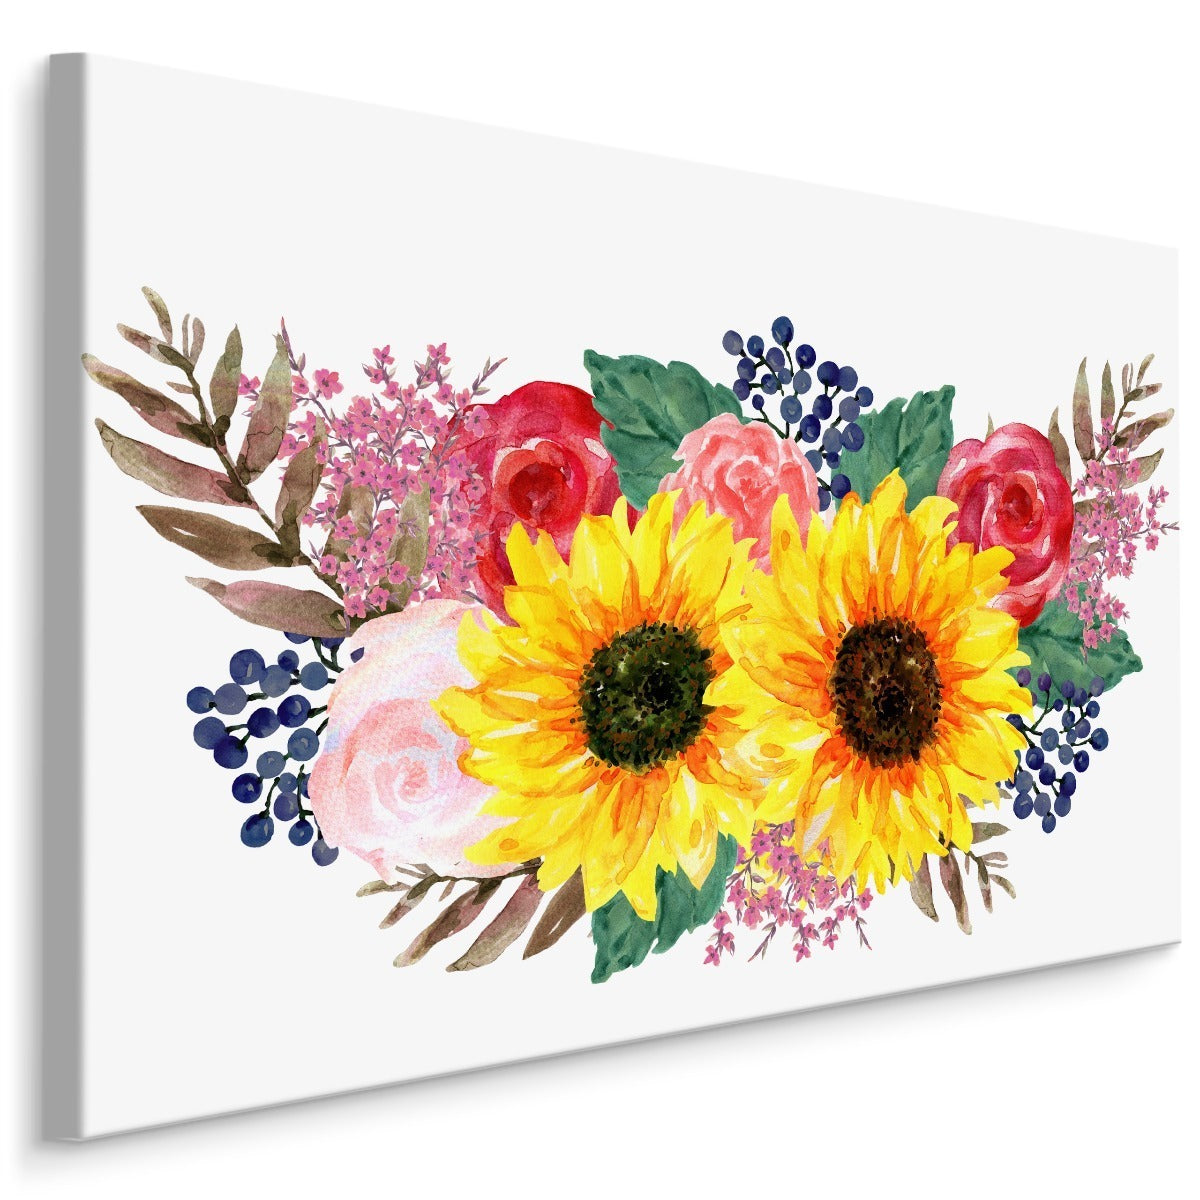 En blomsterkomposisjon malt med akvareller